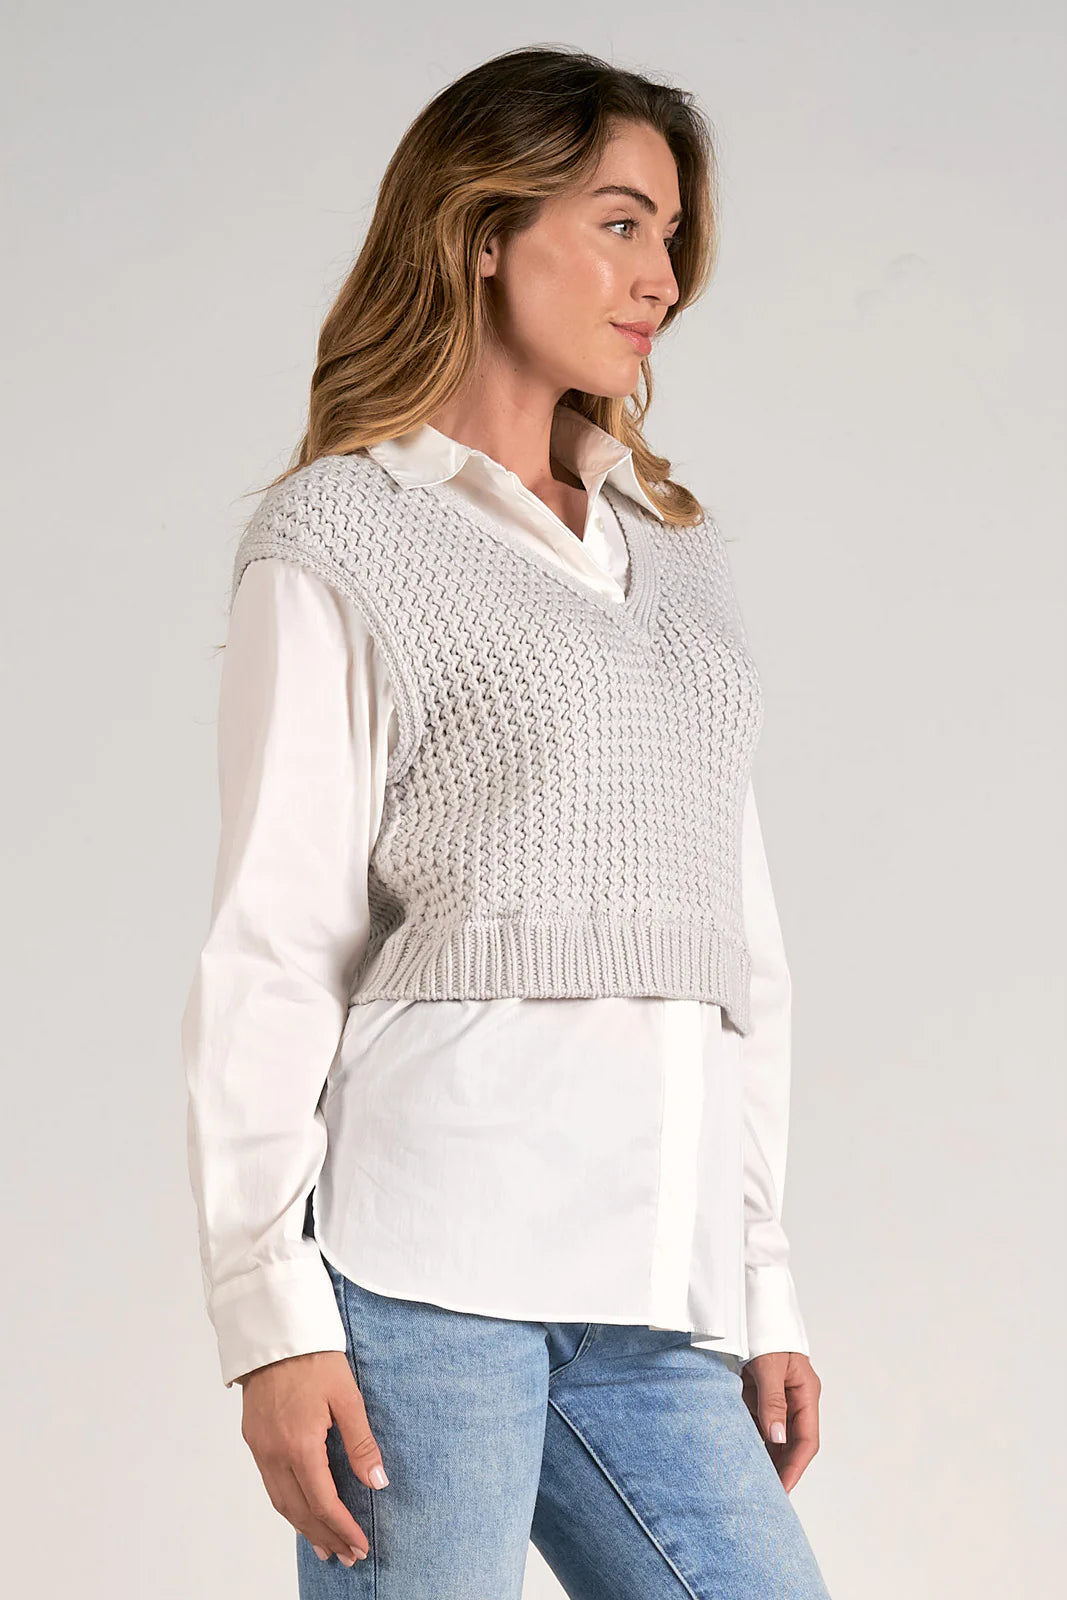 Elan Nine Sweater Shirt Combo